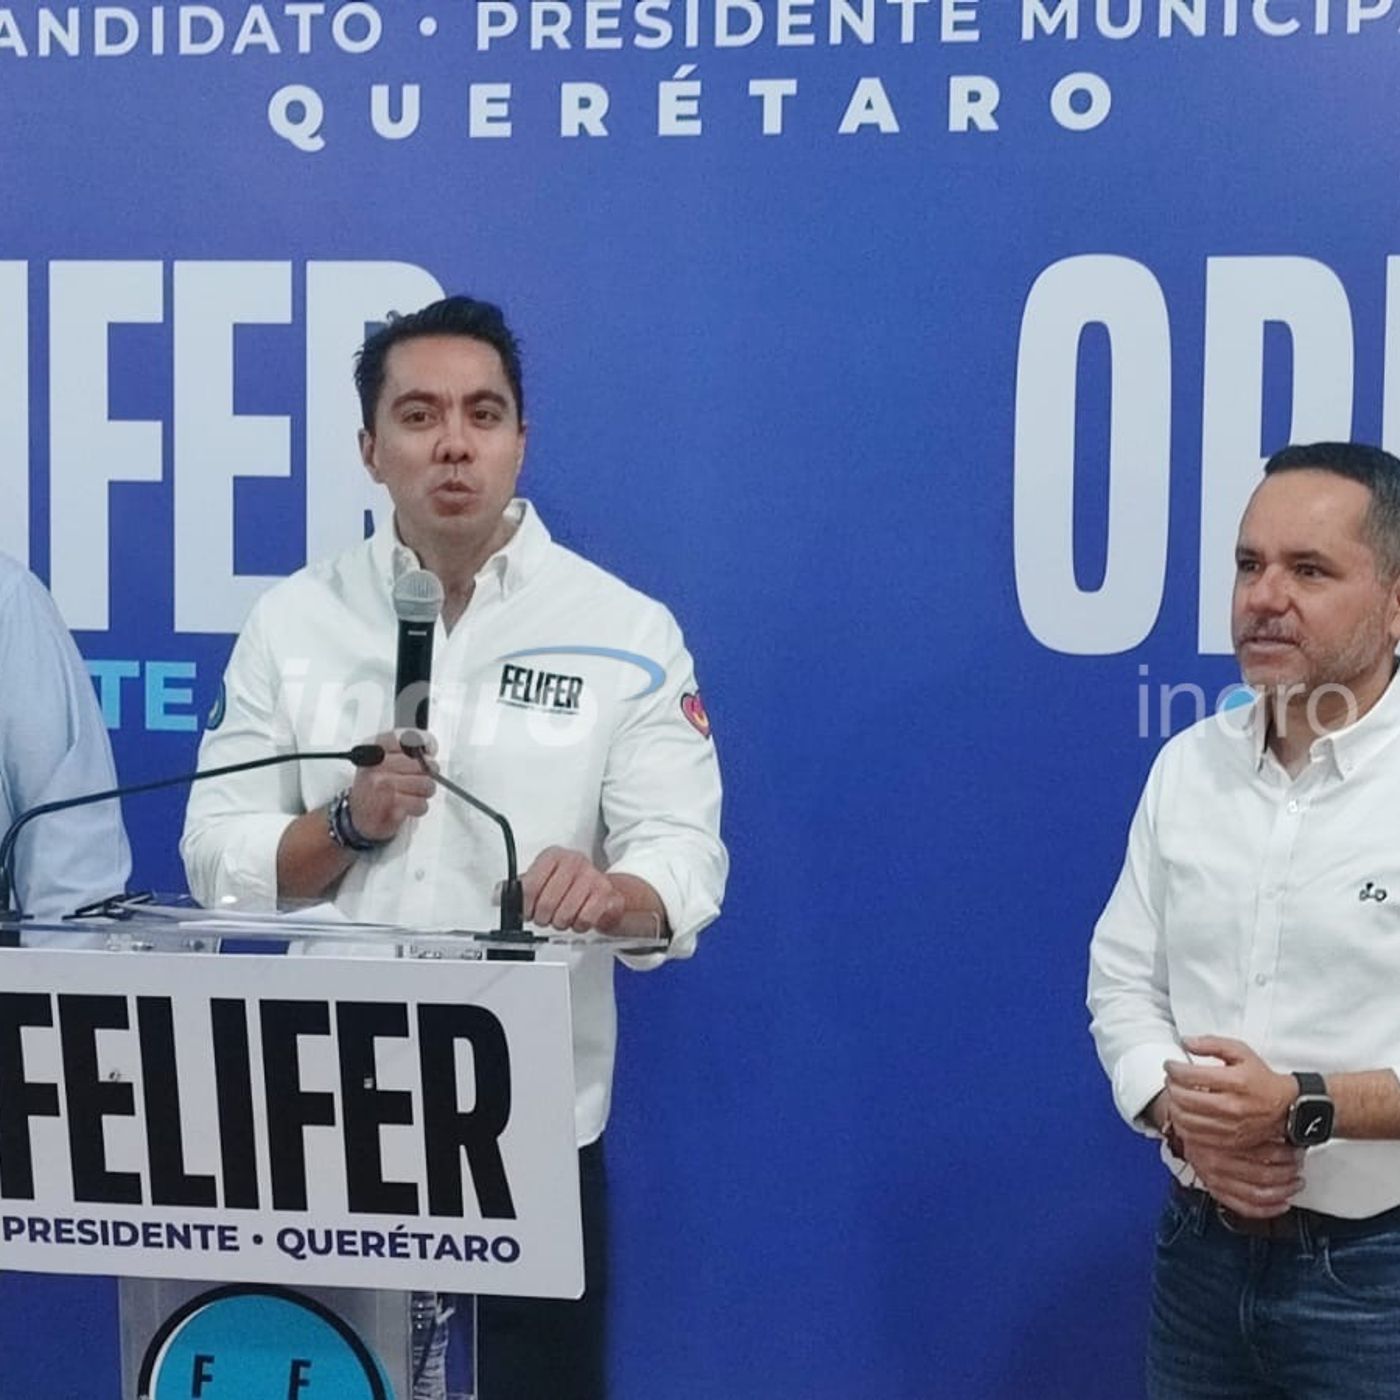 S2024 Ep42: Vamos por el proyecto más grande de obra social en la historia del Municipio de Querétaro: Felifer Macías